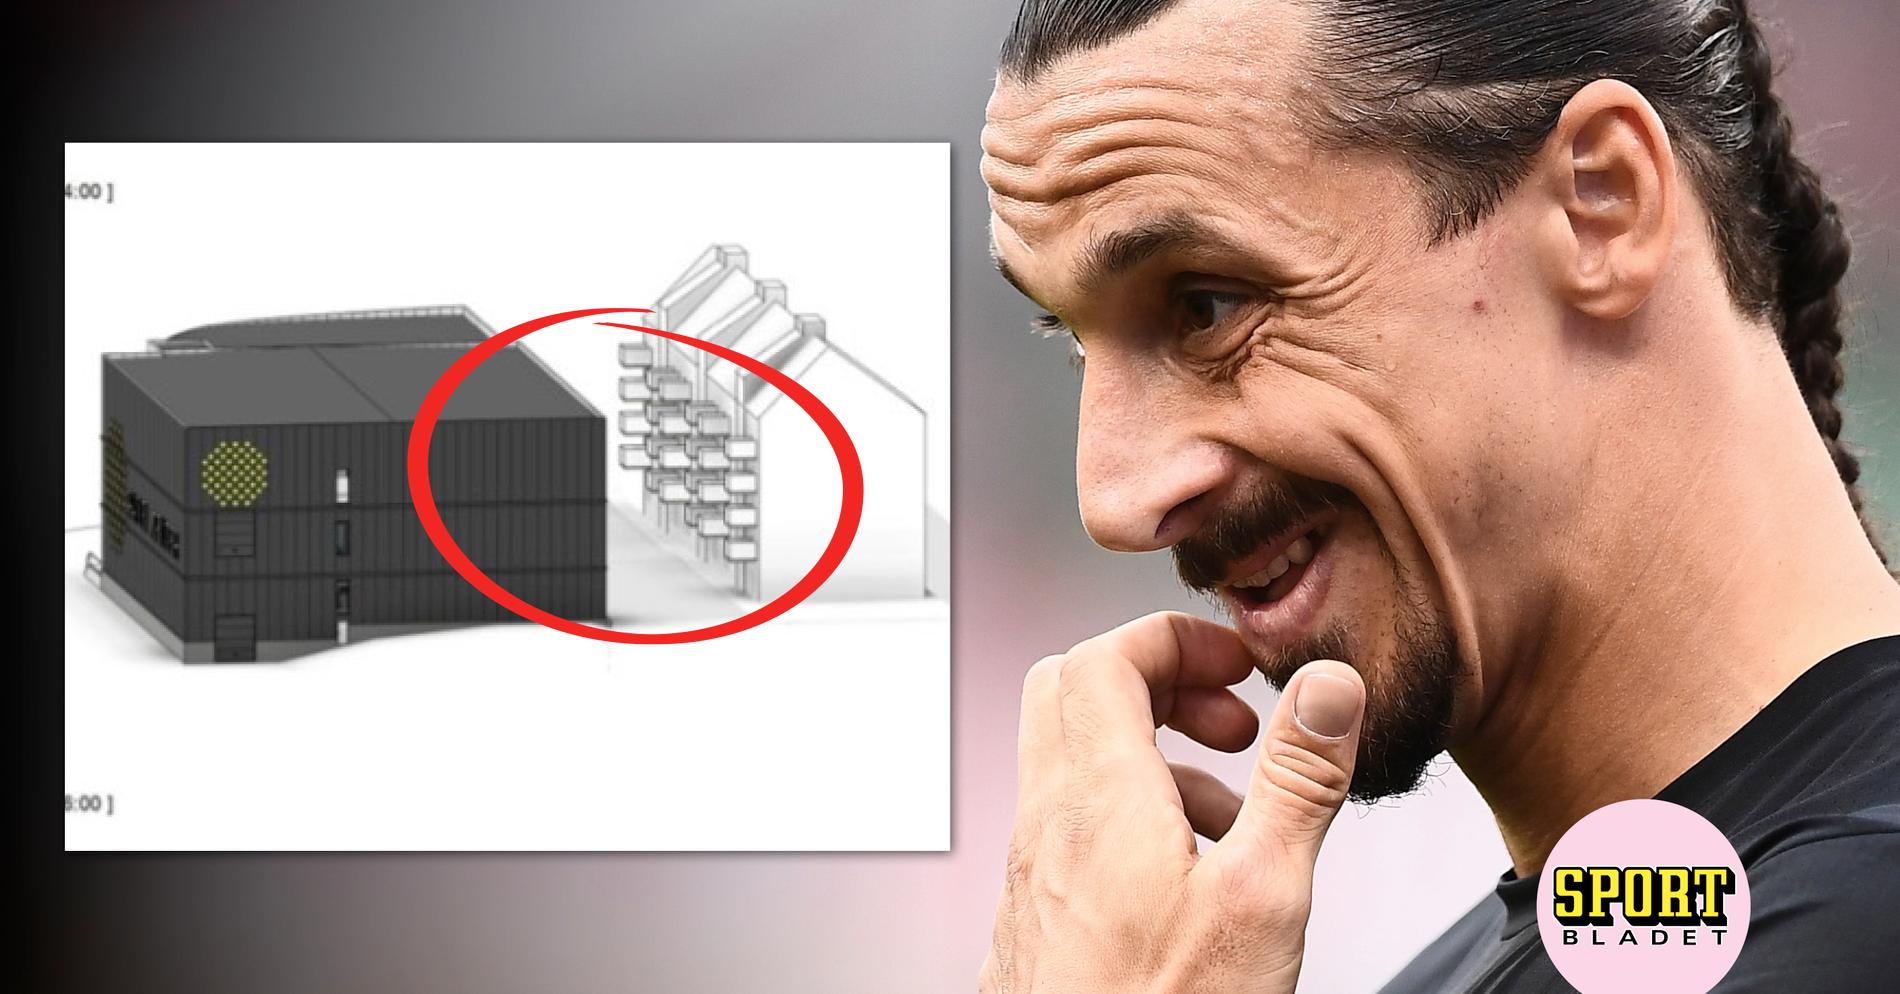 Boende rasar mot Zlatans byggplaner: ”Strider mot allt”